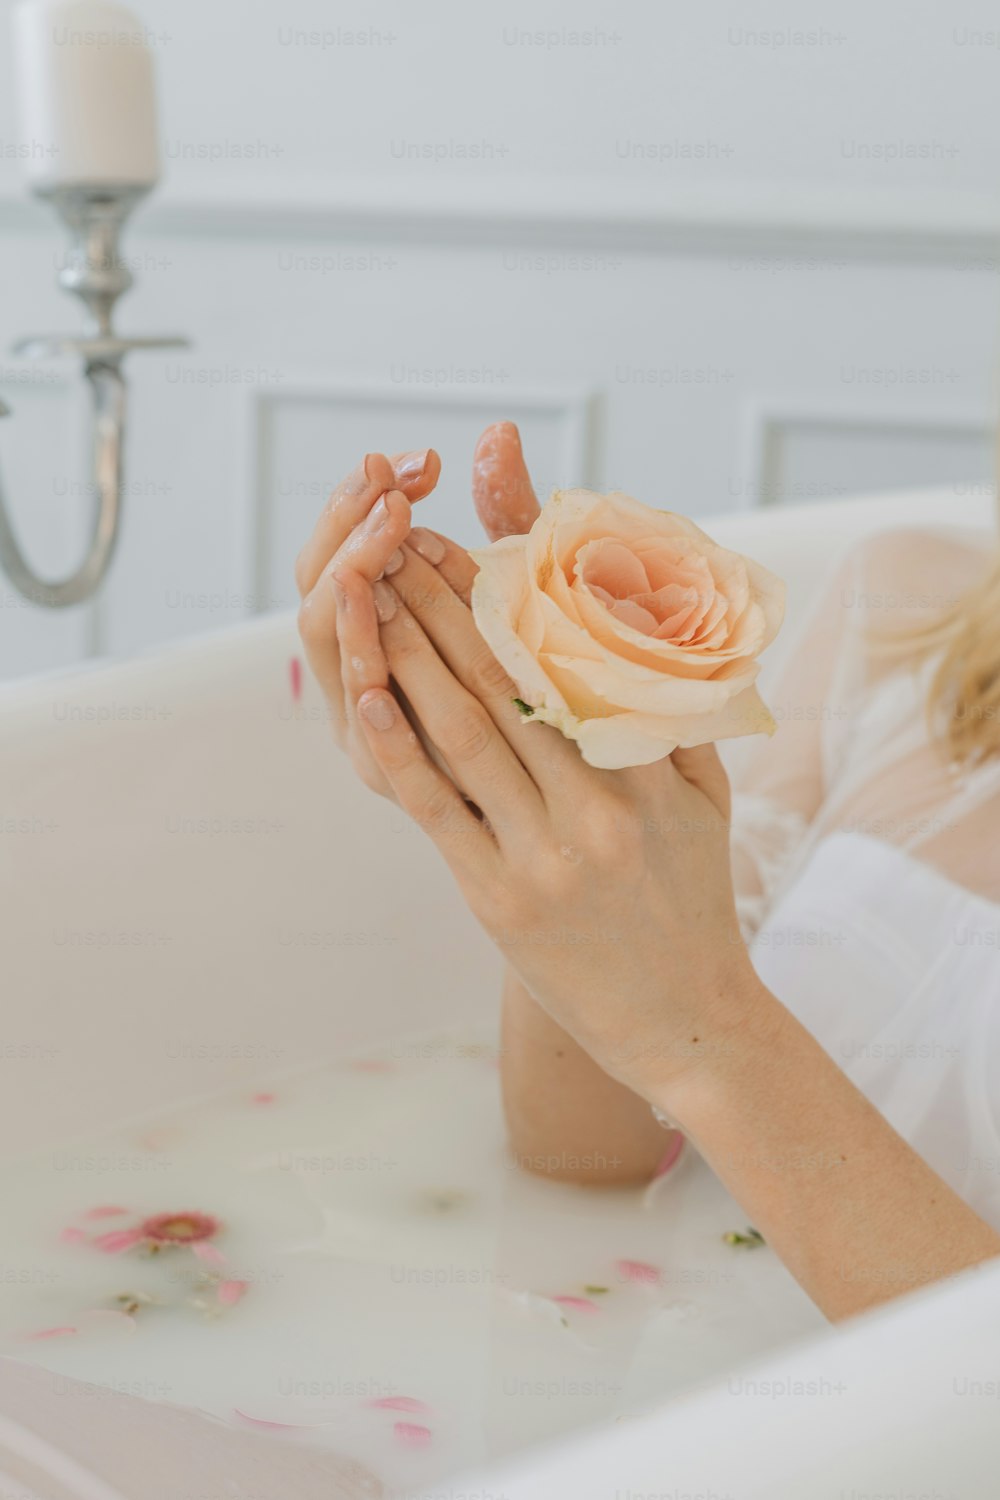 uma mulher sentada em uma banheira segurando uma flor